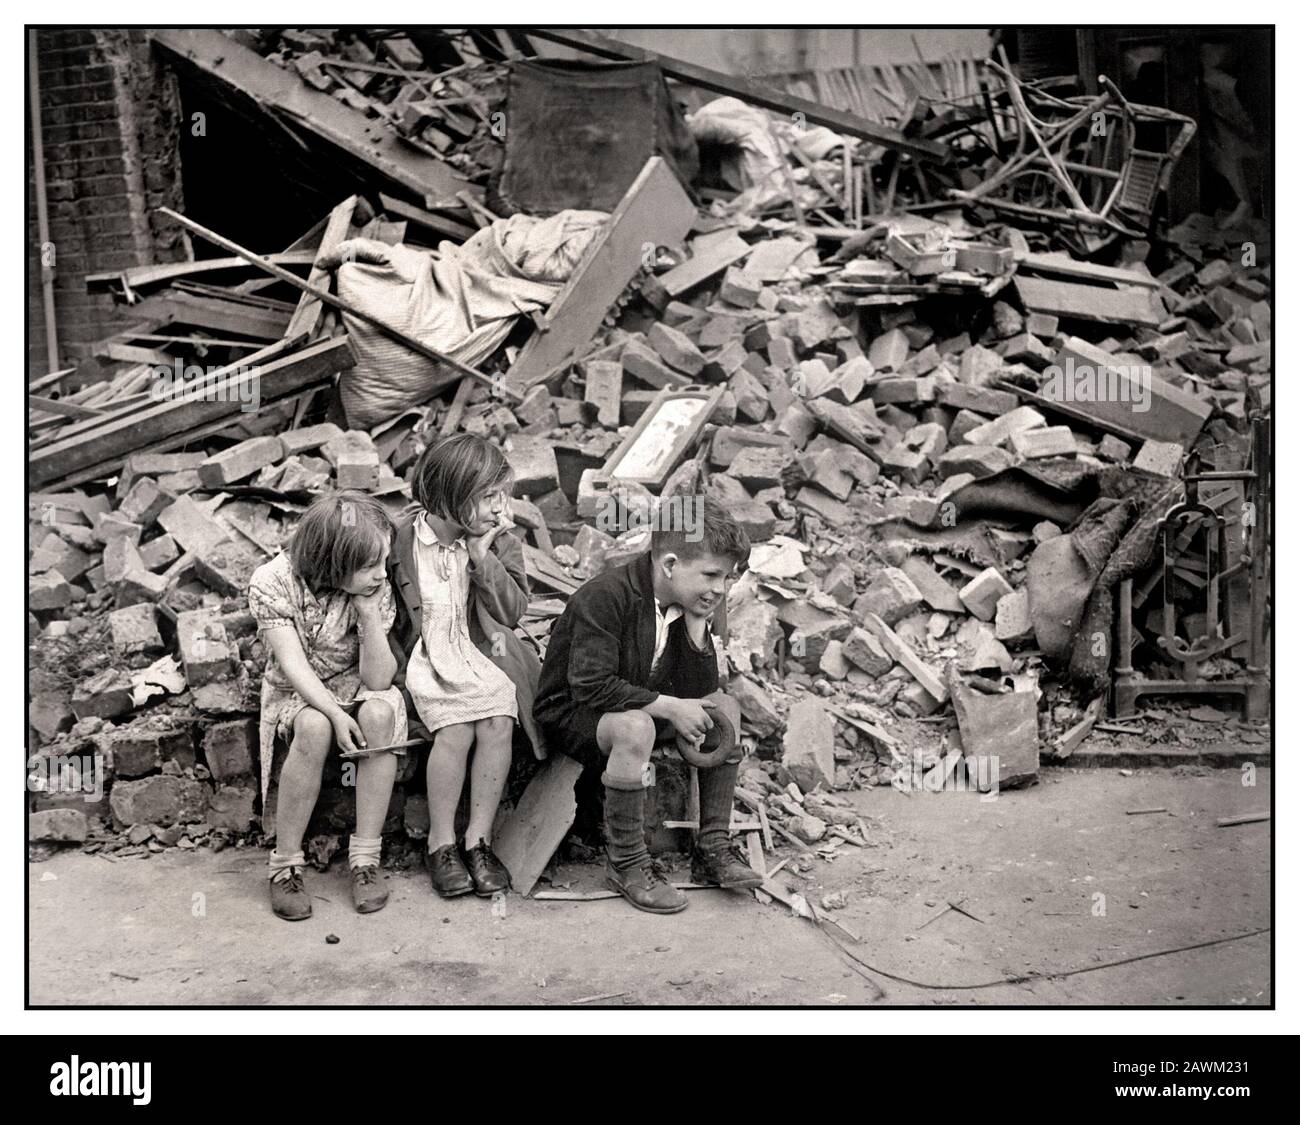 Les enfants de Londres de la seconde Guerre mondiale dans les années 1940 de l'est de Londres, qui ont été sans abri par les bombes au hasard de Londres Blitz d'Allemagne nazie bombardant des raids nocturnes, en attendant à l'extérieur de l'épave de ce qui était leur maison. Septembre 1940. East London Royaume-Uni Banque D'Images